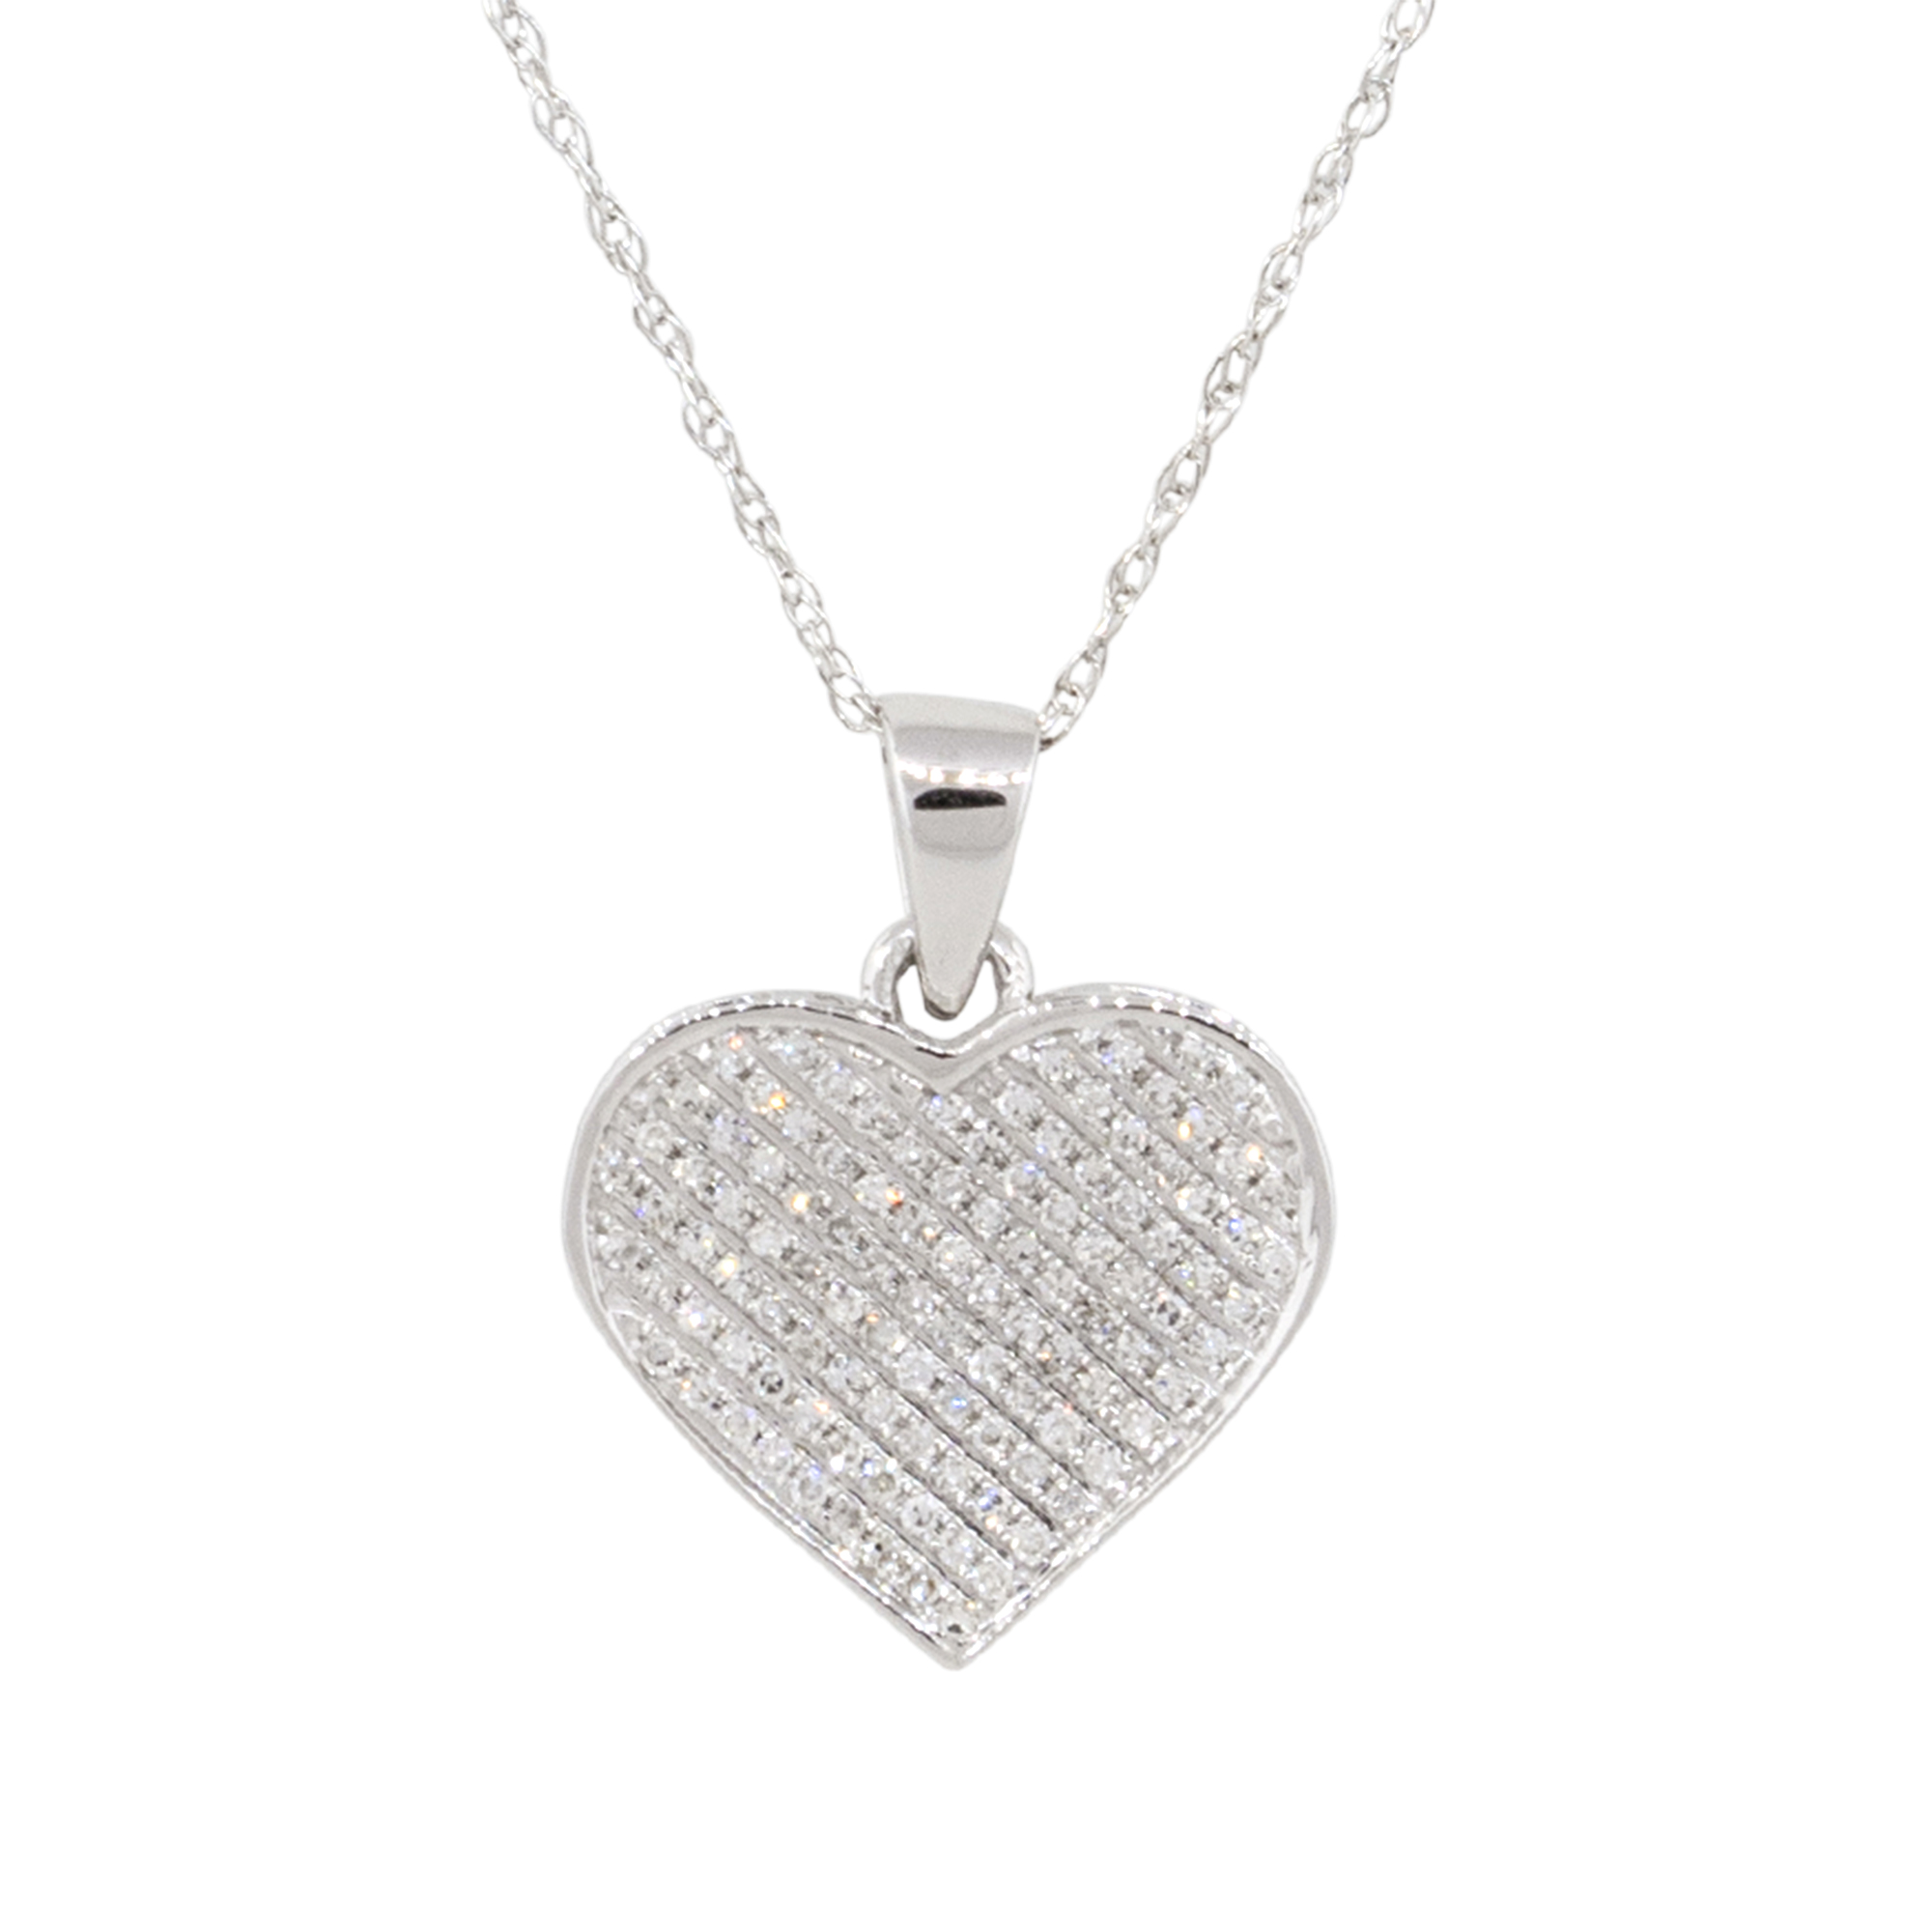 Valentine's Day jewelry ideas